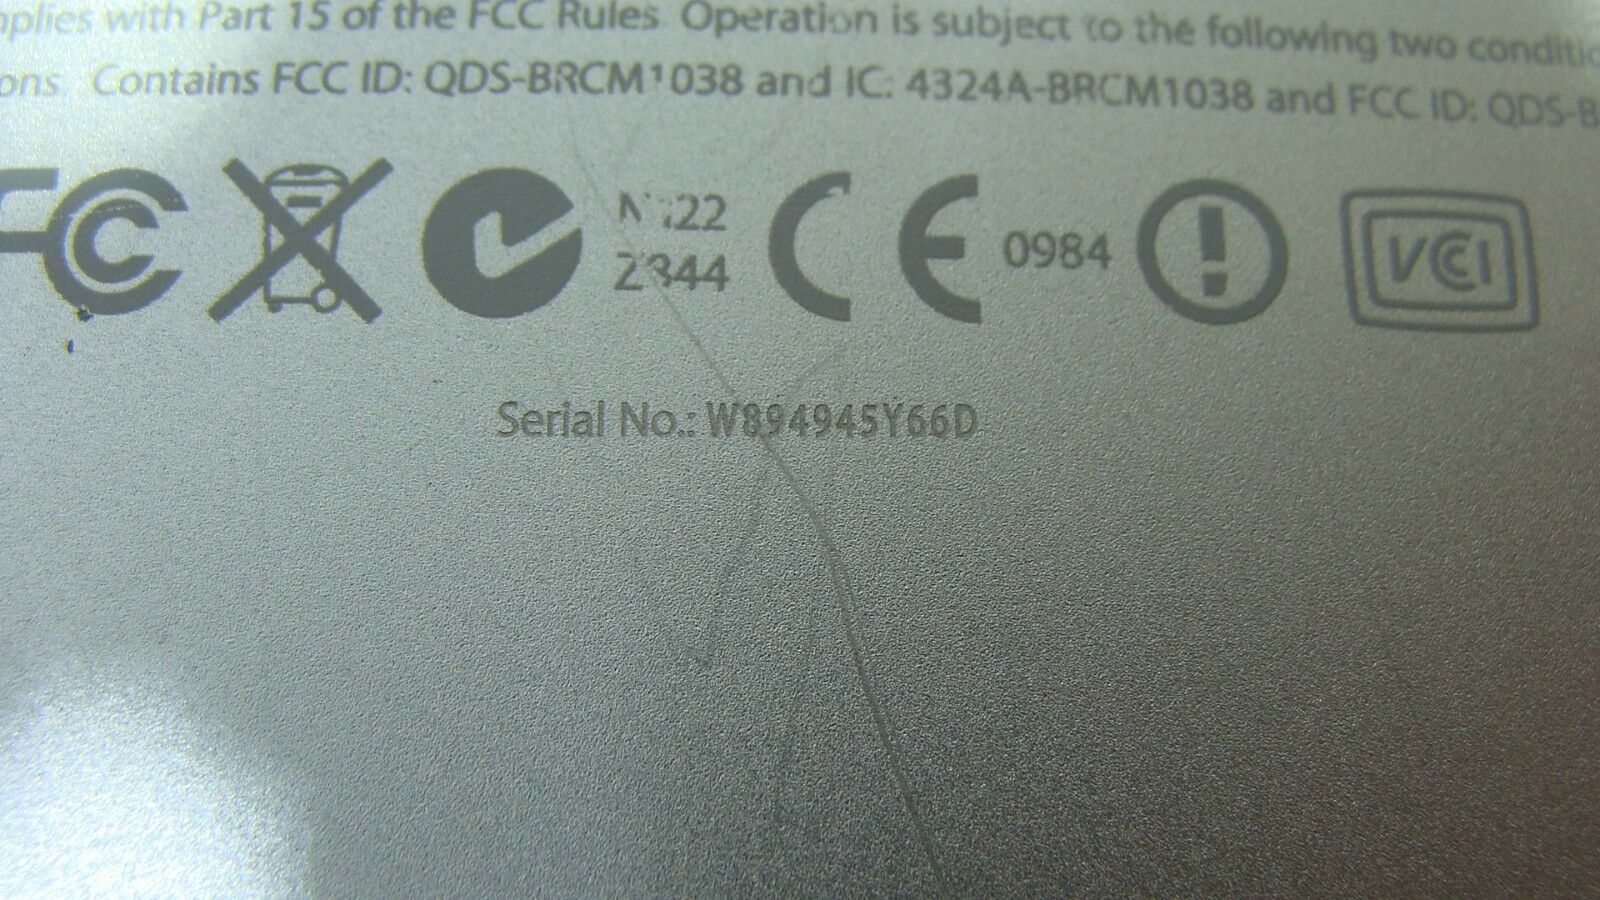 Macbook Pro A1278 MB990LL/A Mid 2009 13